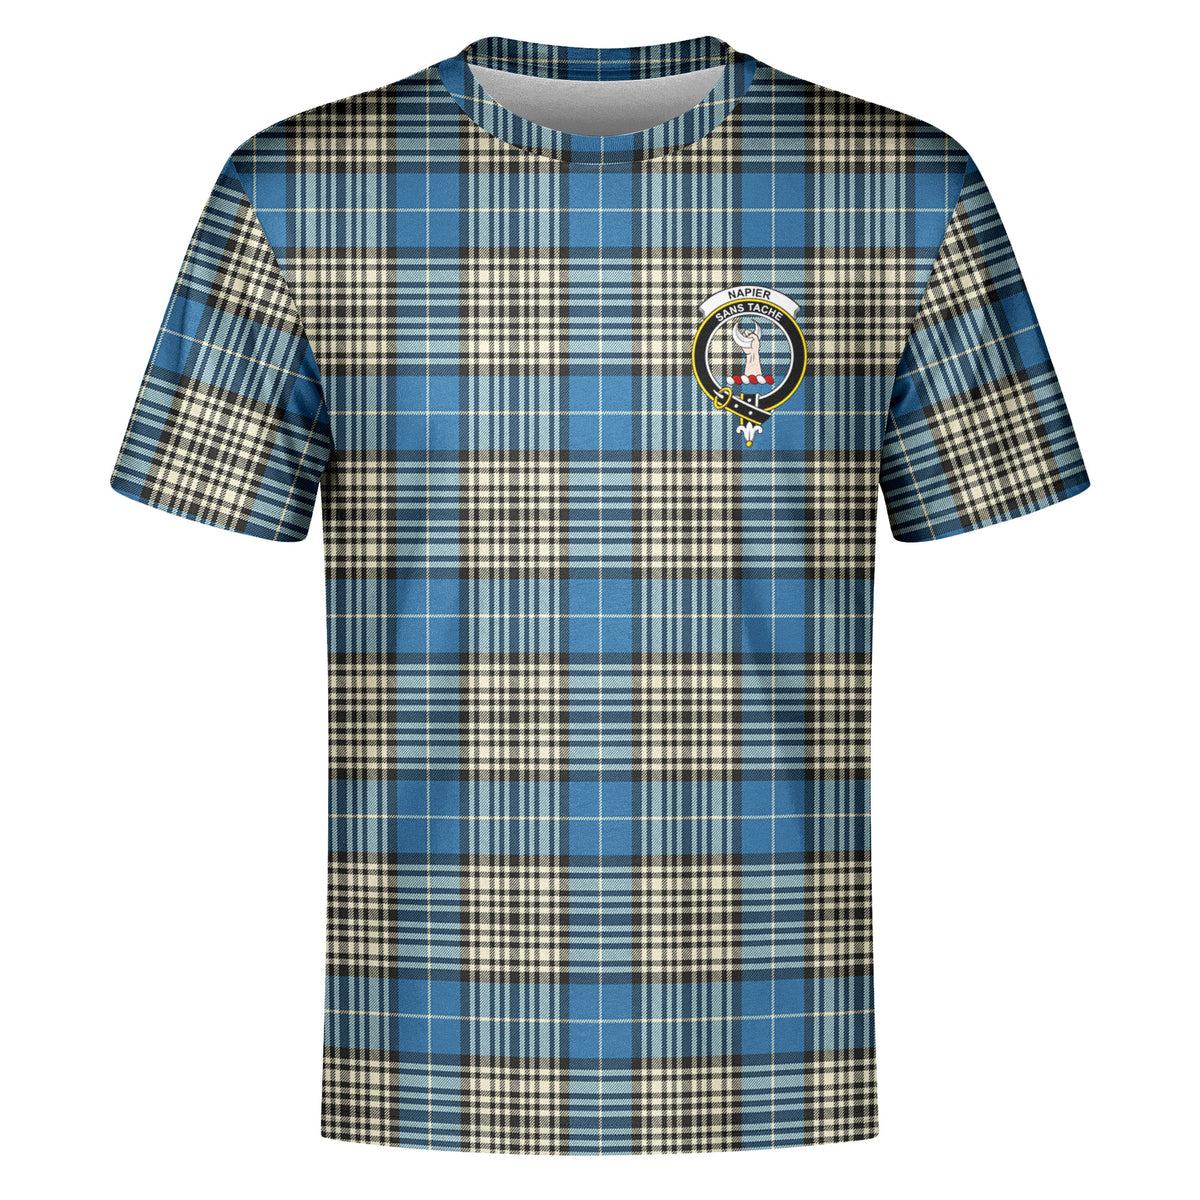 Napier Ancient Tartan Crest T-shirt